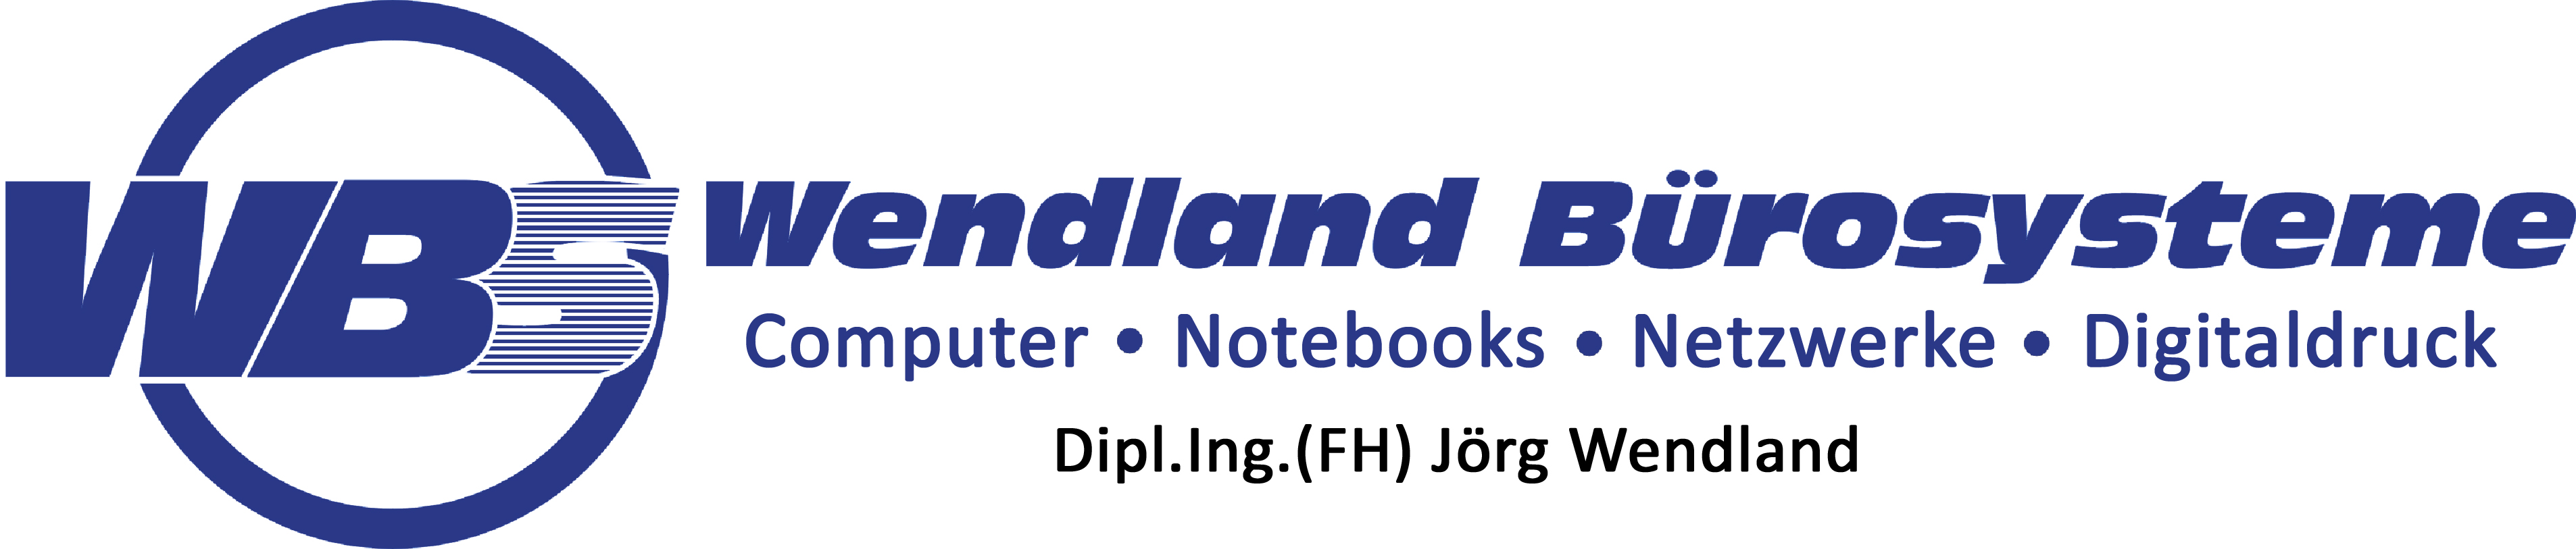 Onlineshop Wendland Bürosysteme - Computer, Notebooks, Netzwerke aus Heide (Dithmarschen)